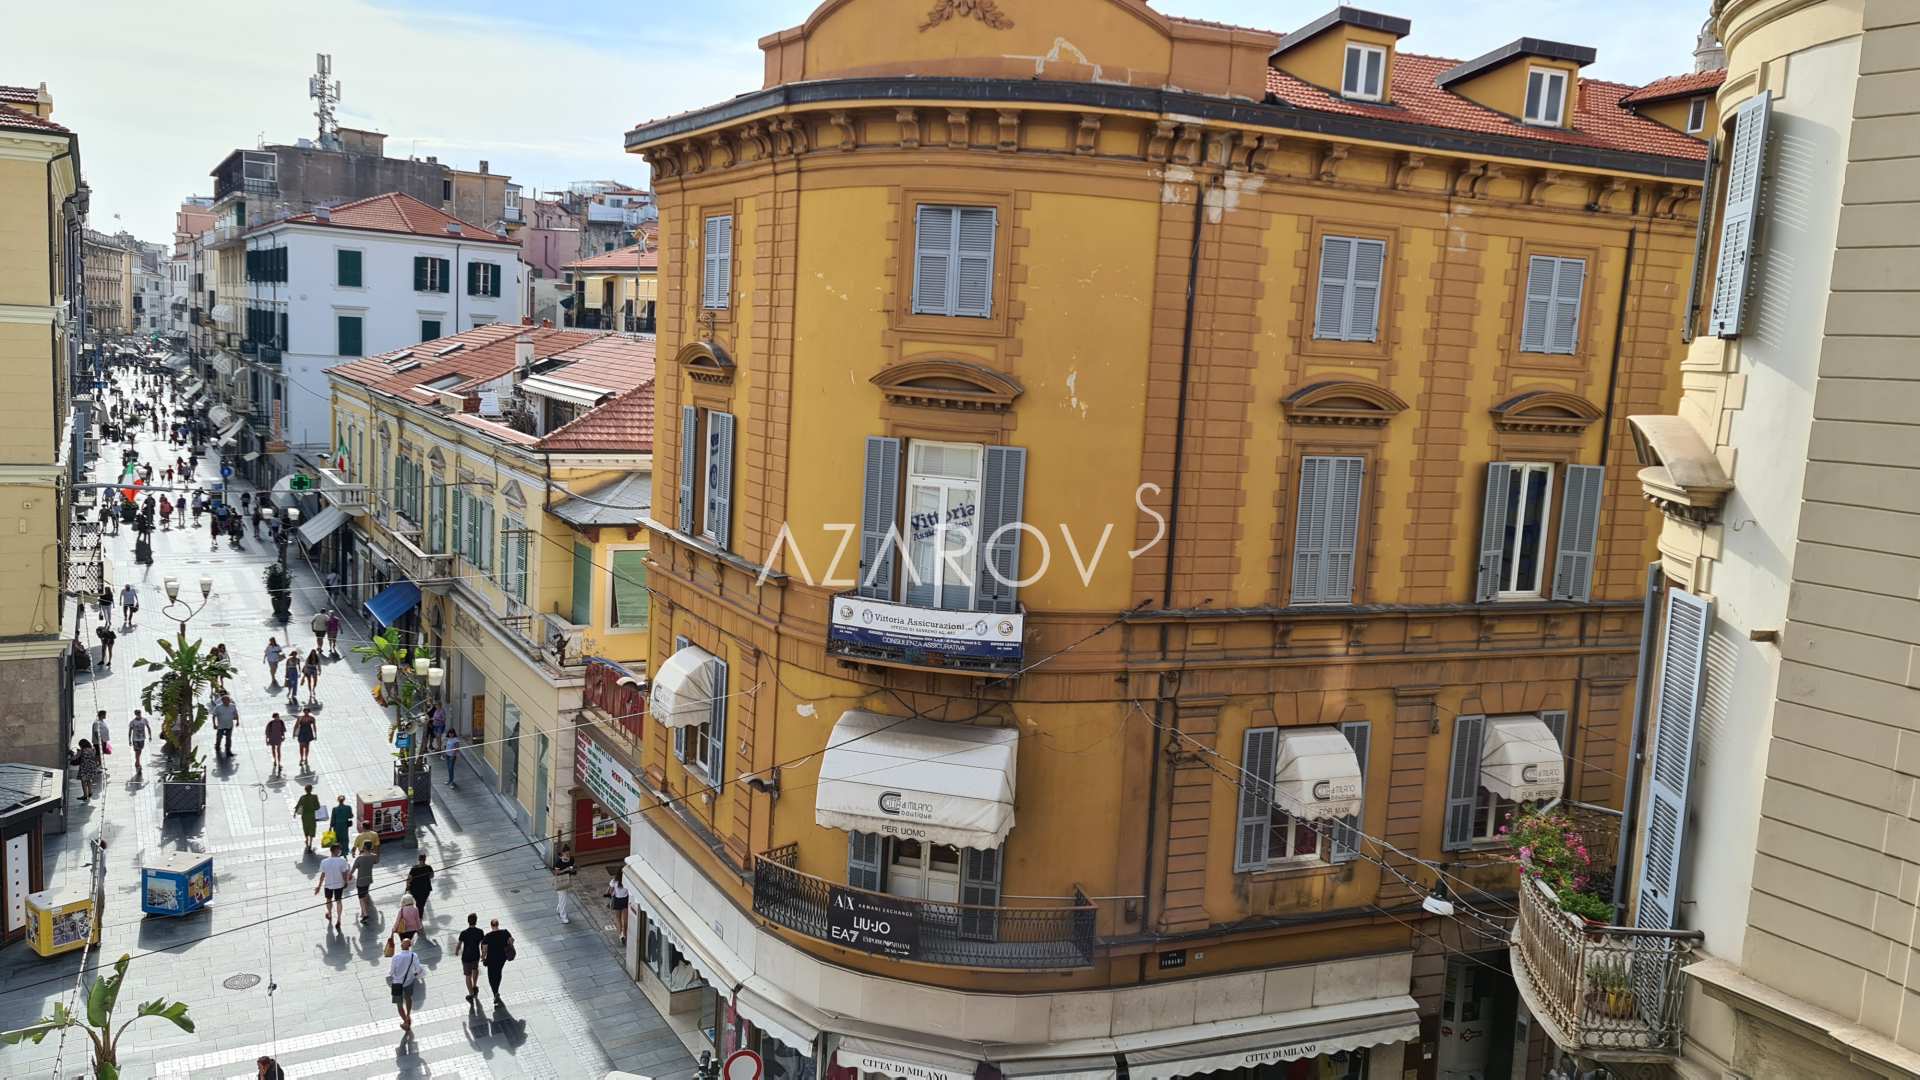 Lejlighed i centrum af Sanremo